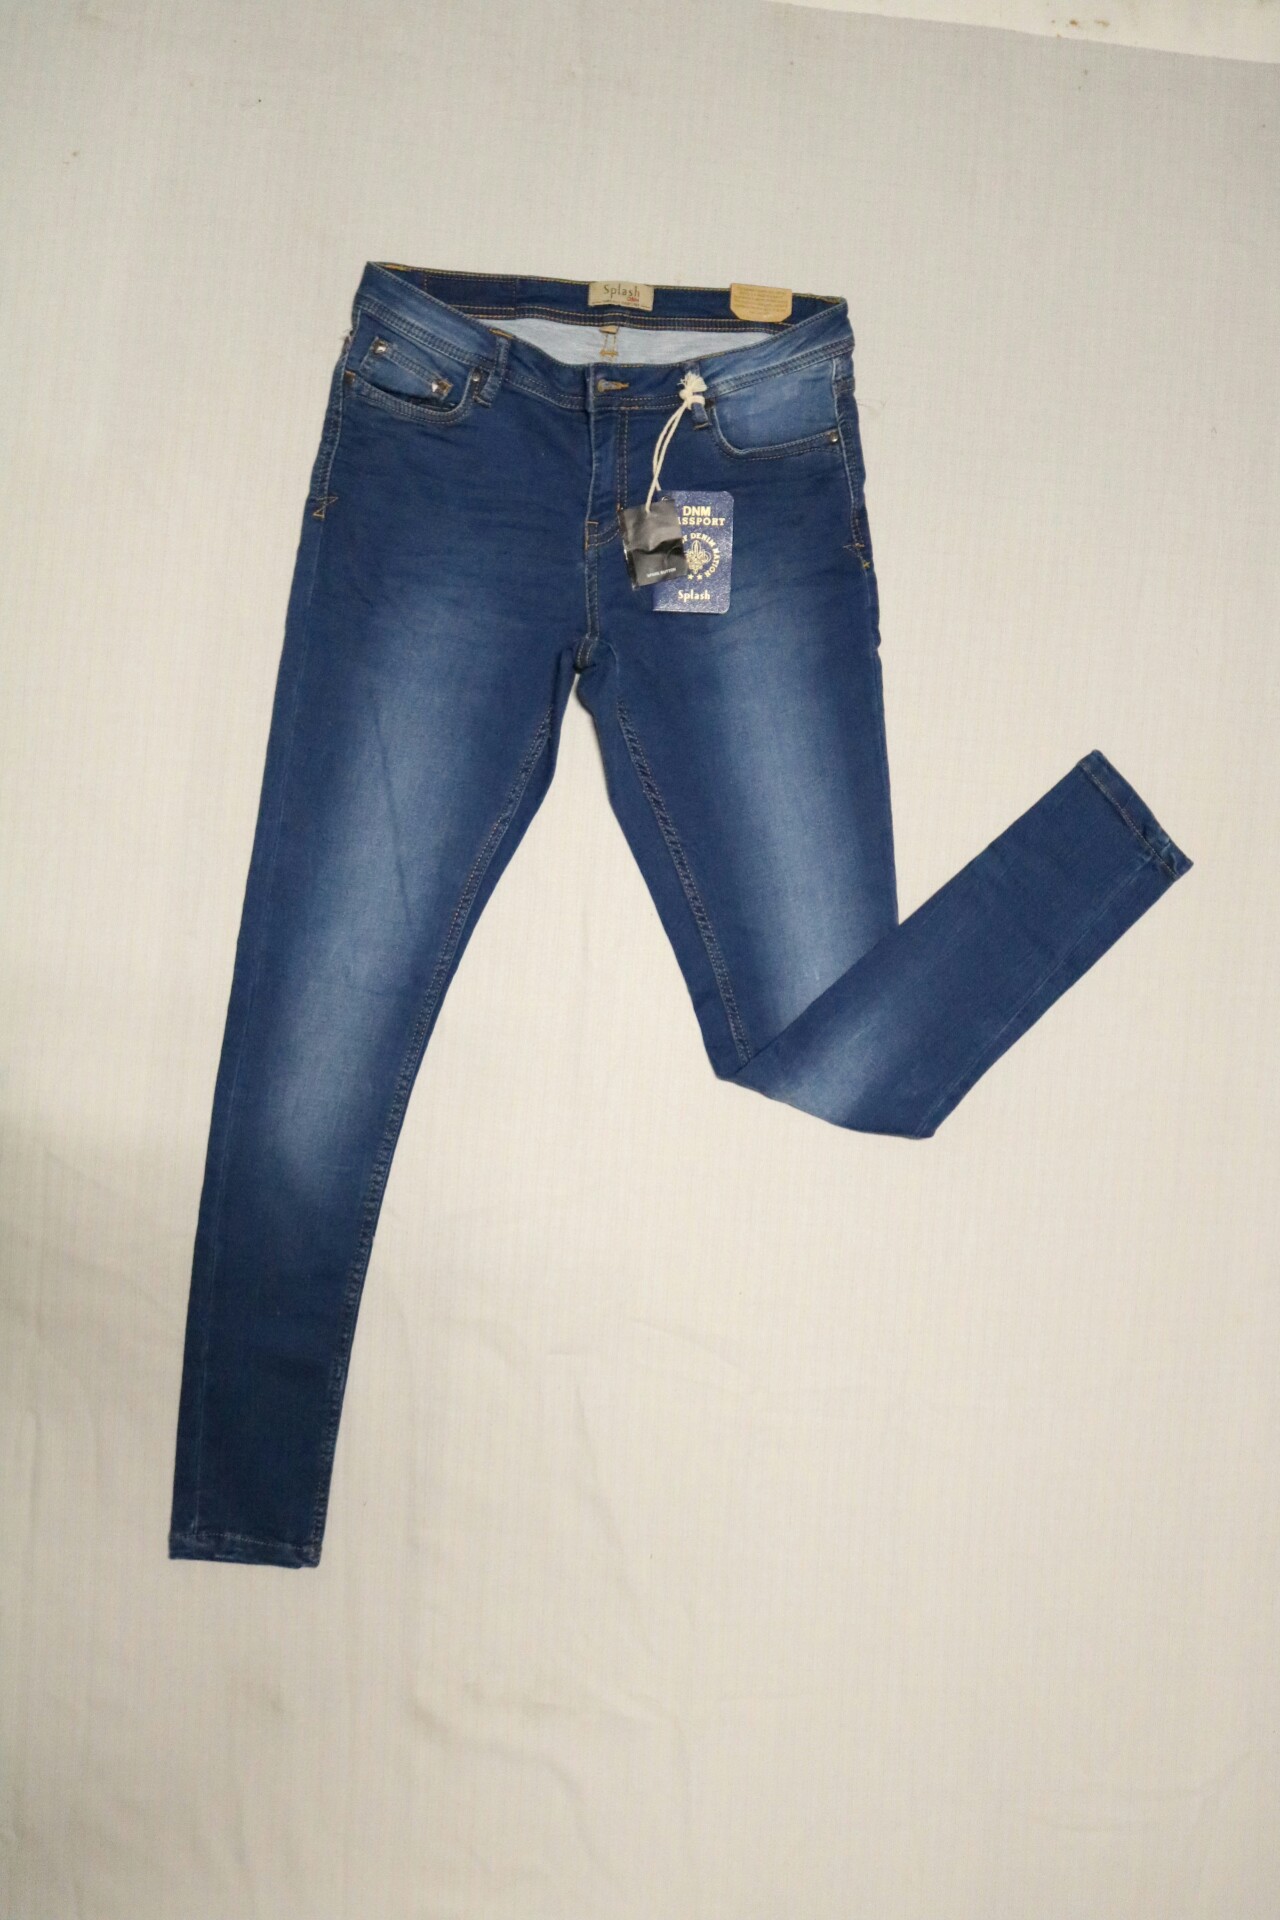 dark blue women's jeans